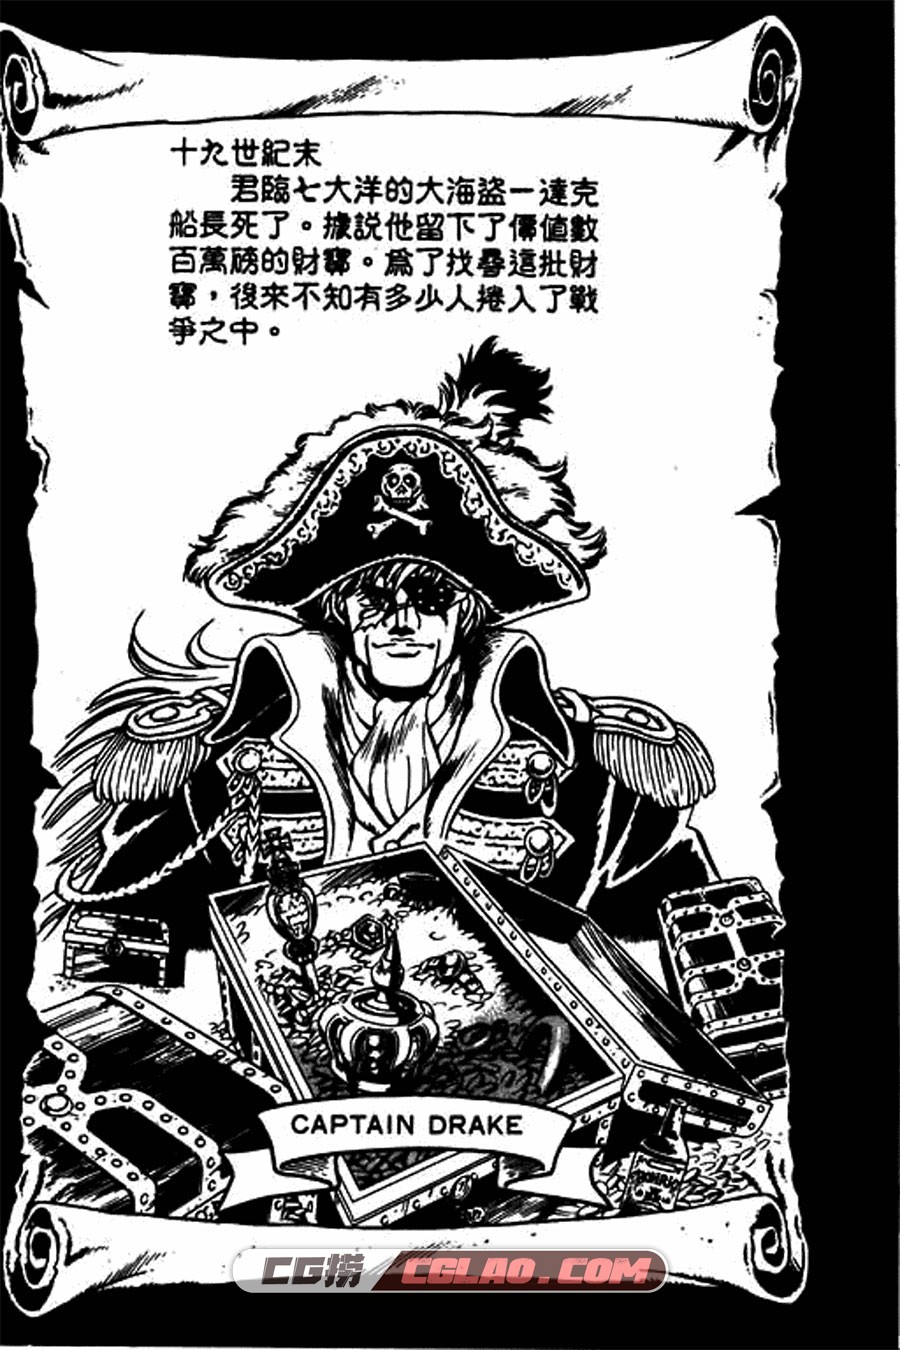 海盗王子 宇野比吕士 1-10卷 漫画完结全集下载 百度网盘,海盗王子_01-6.jpg